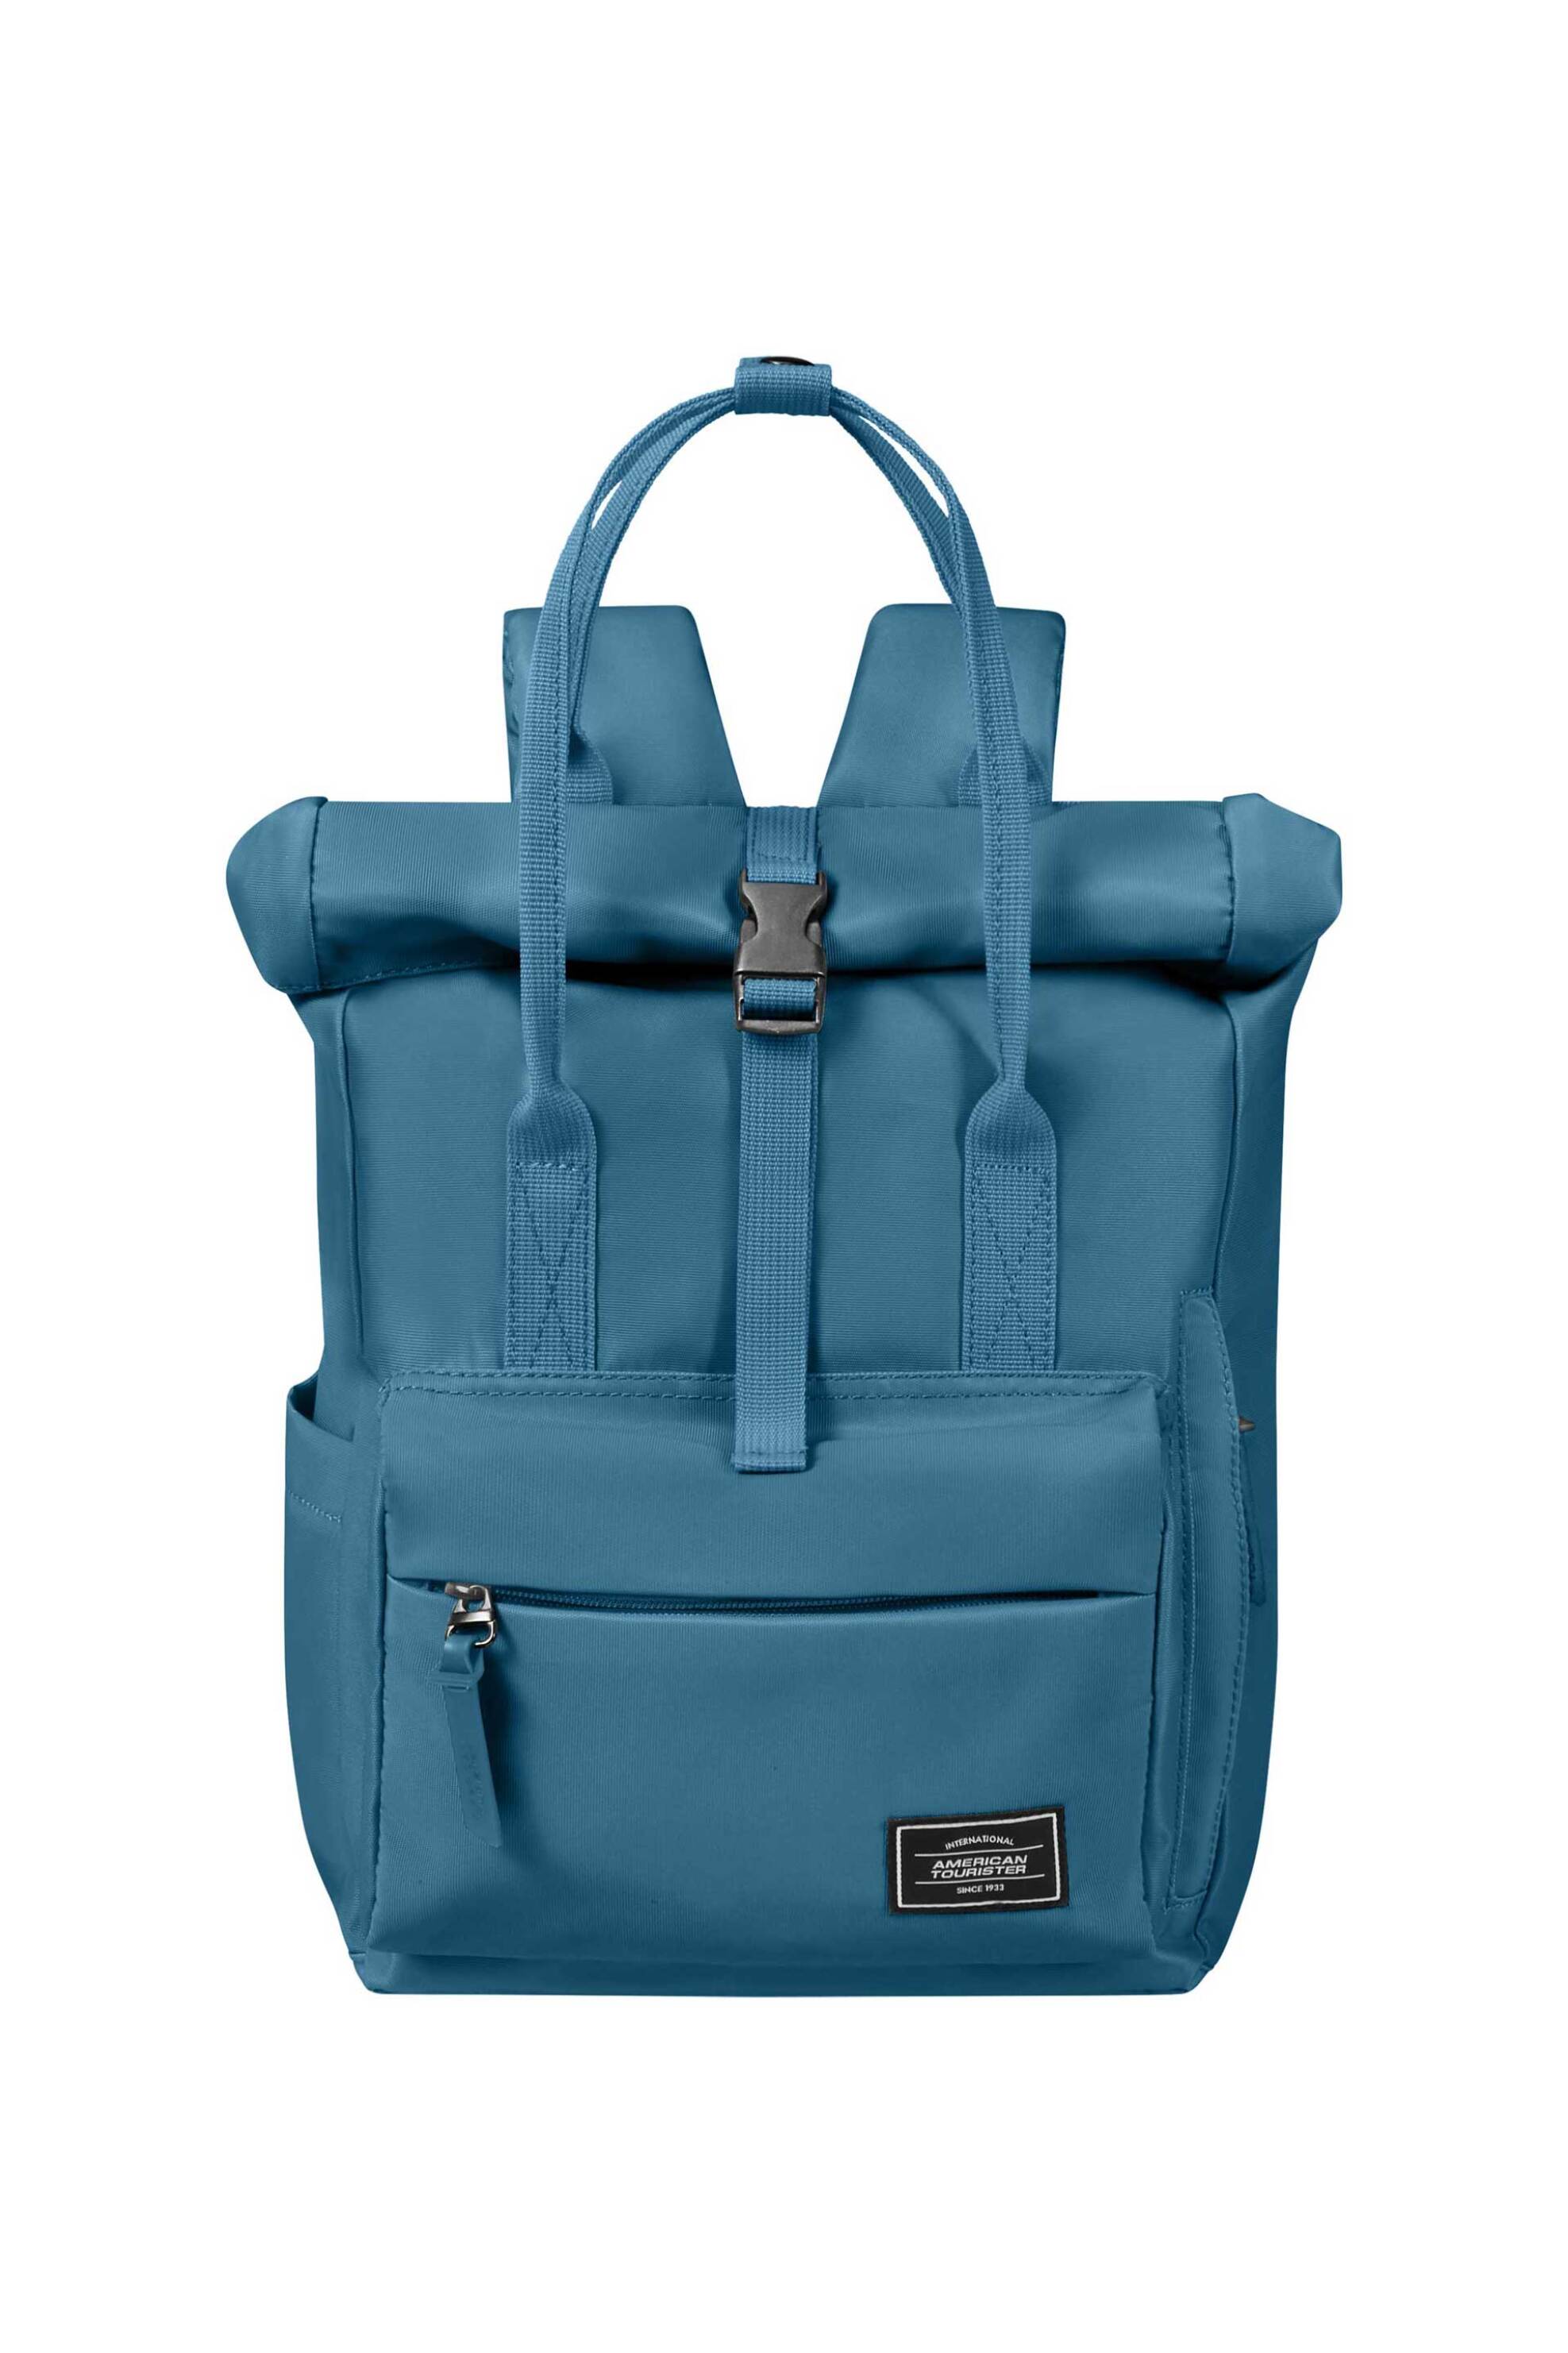 Ανδρική Μόδα > Ανδρικές Τσάντες > Ανδρικά Σακίδια & Backpacks American Tourister unisex backpack μονόχρωμο με πολλαπλές θήκες "Urban Groove" 36 x 25 x 20 cm - 143779SM Μπλε